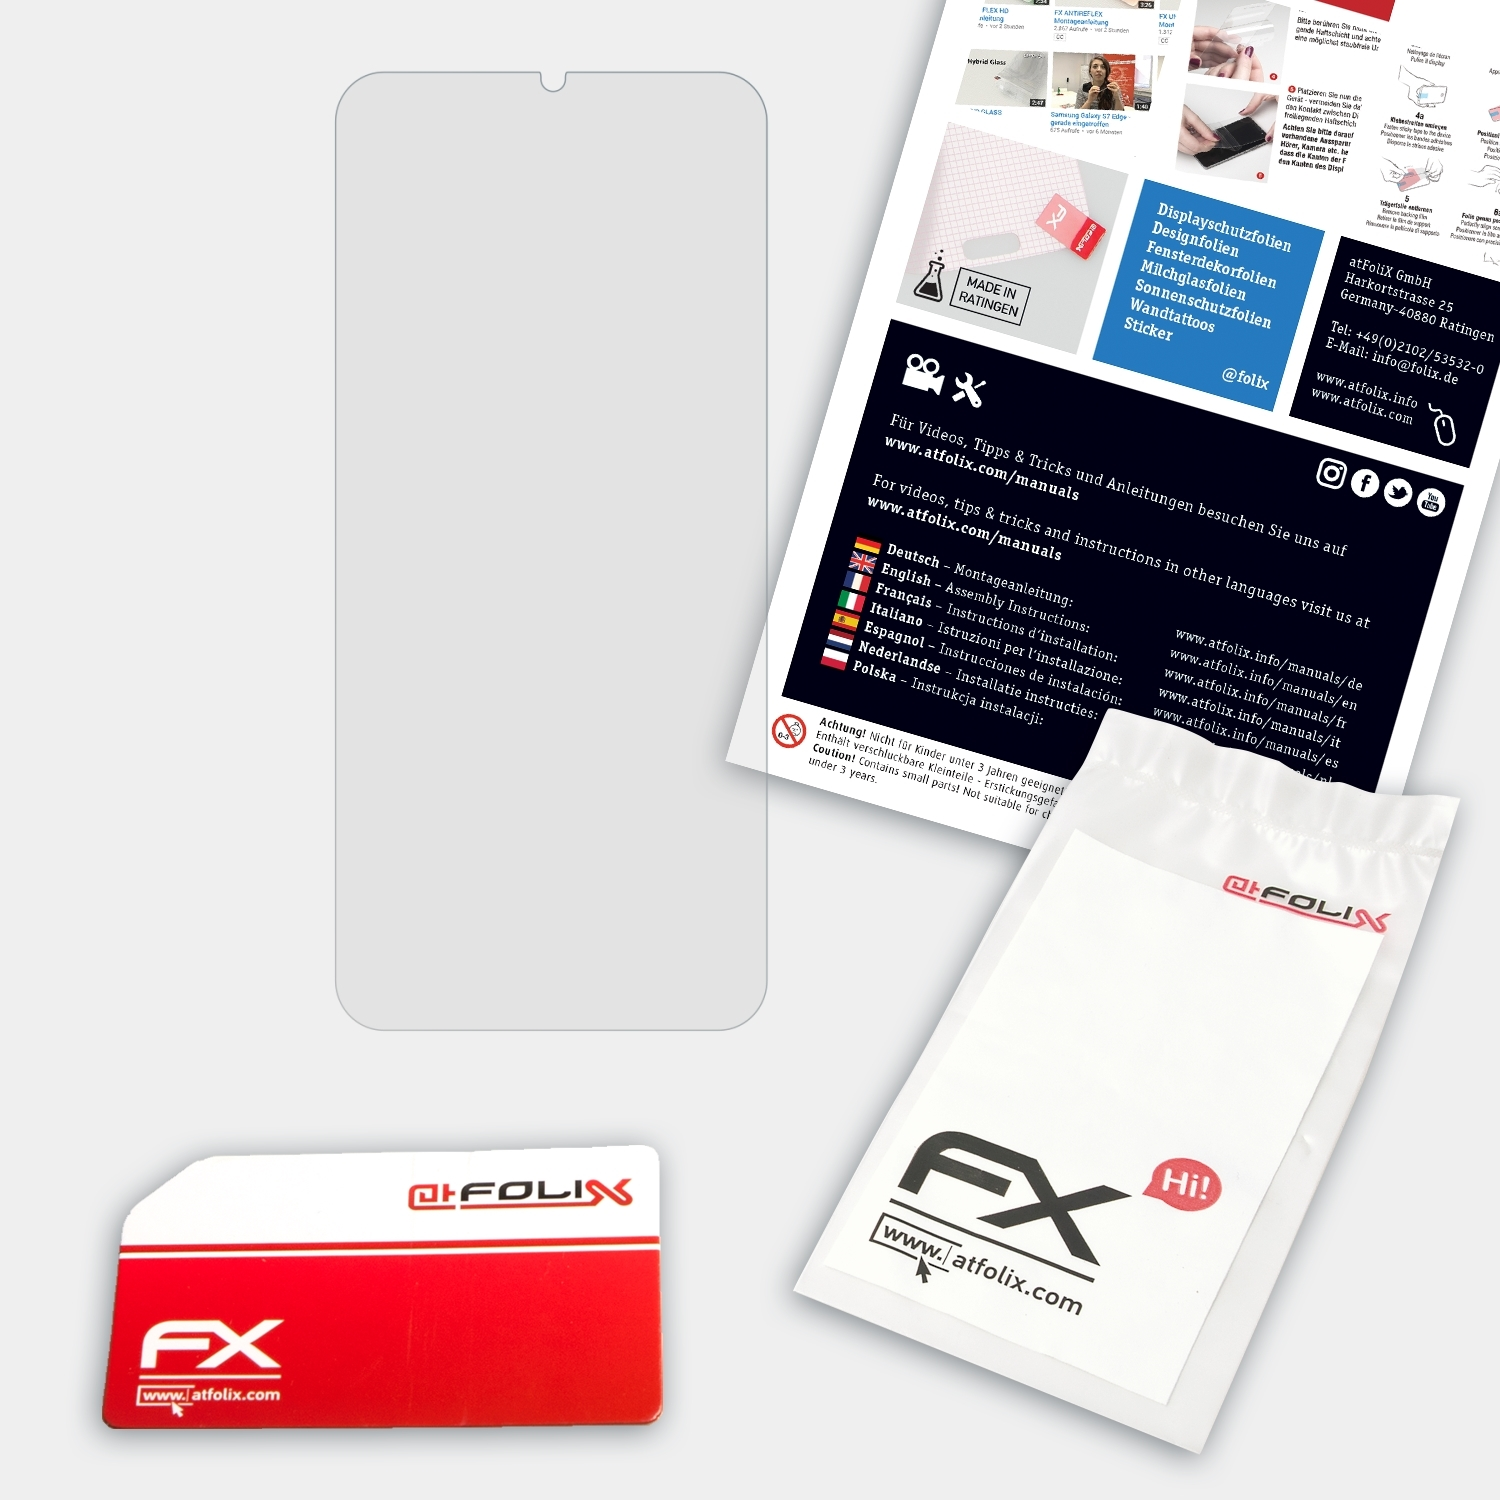 FX-Hybrid-Glass OnePlus ATFOLIX Schutzglas(für 6T)